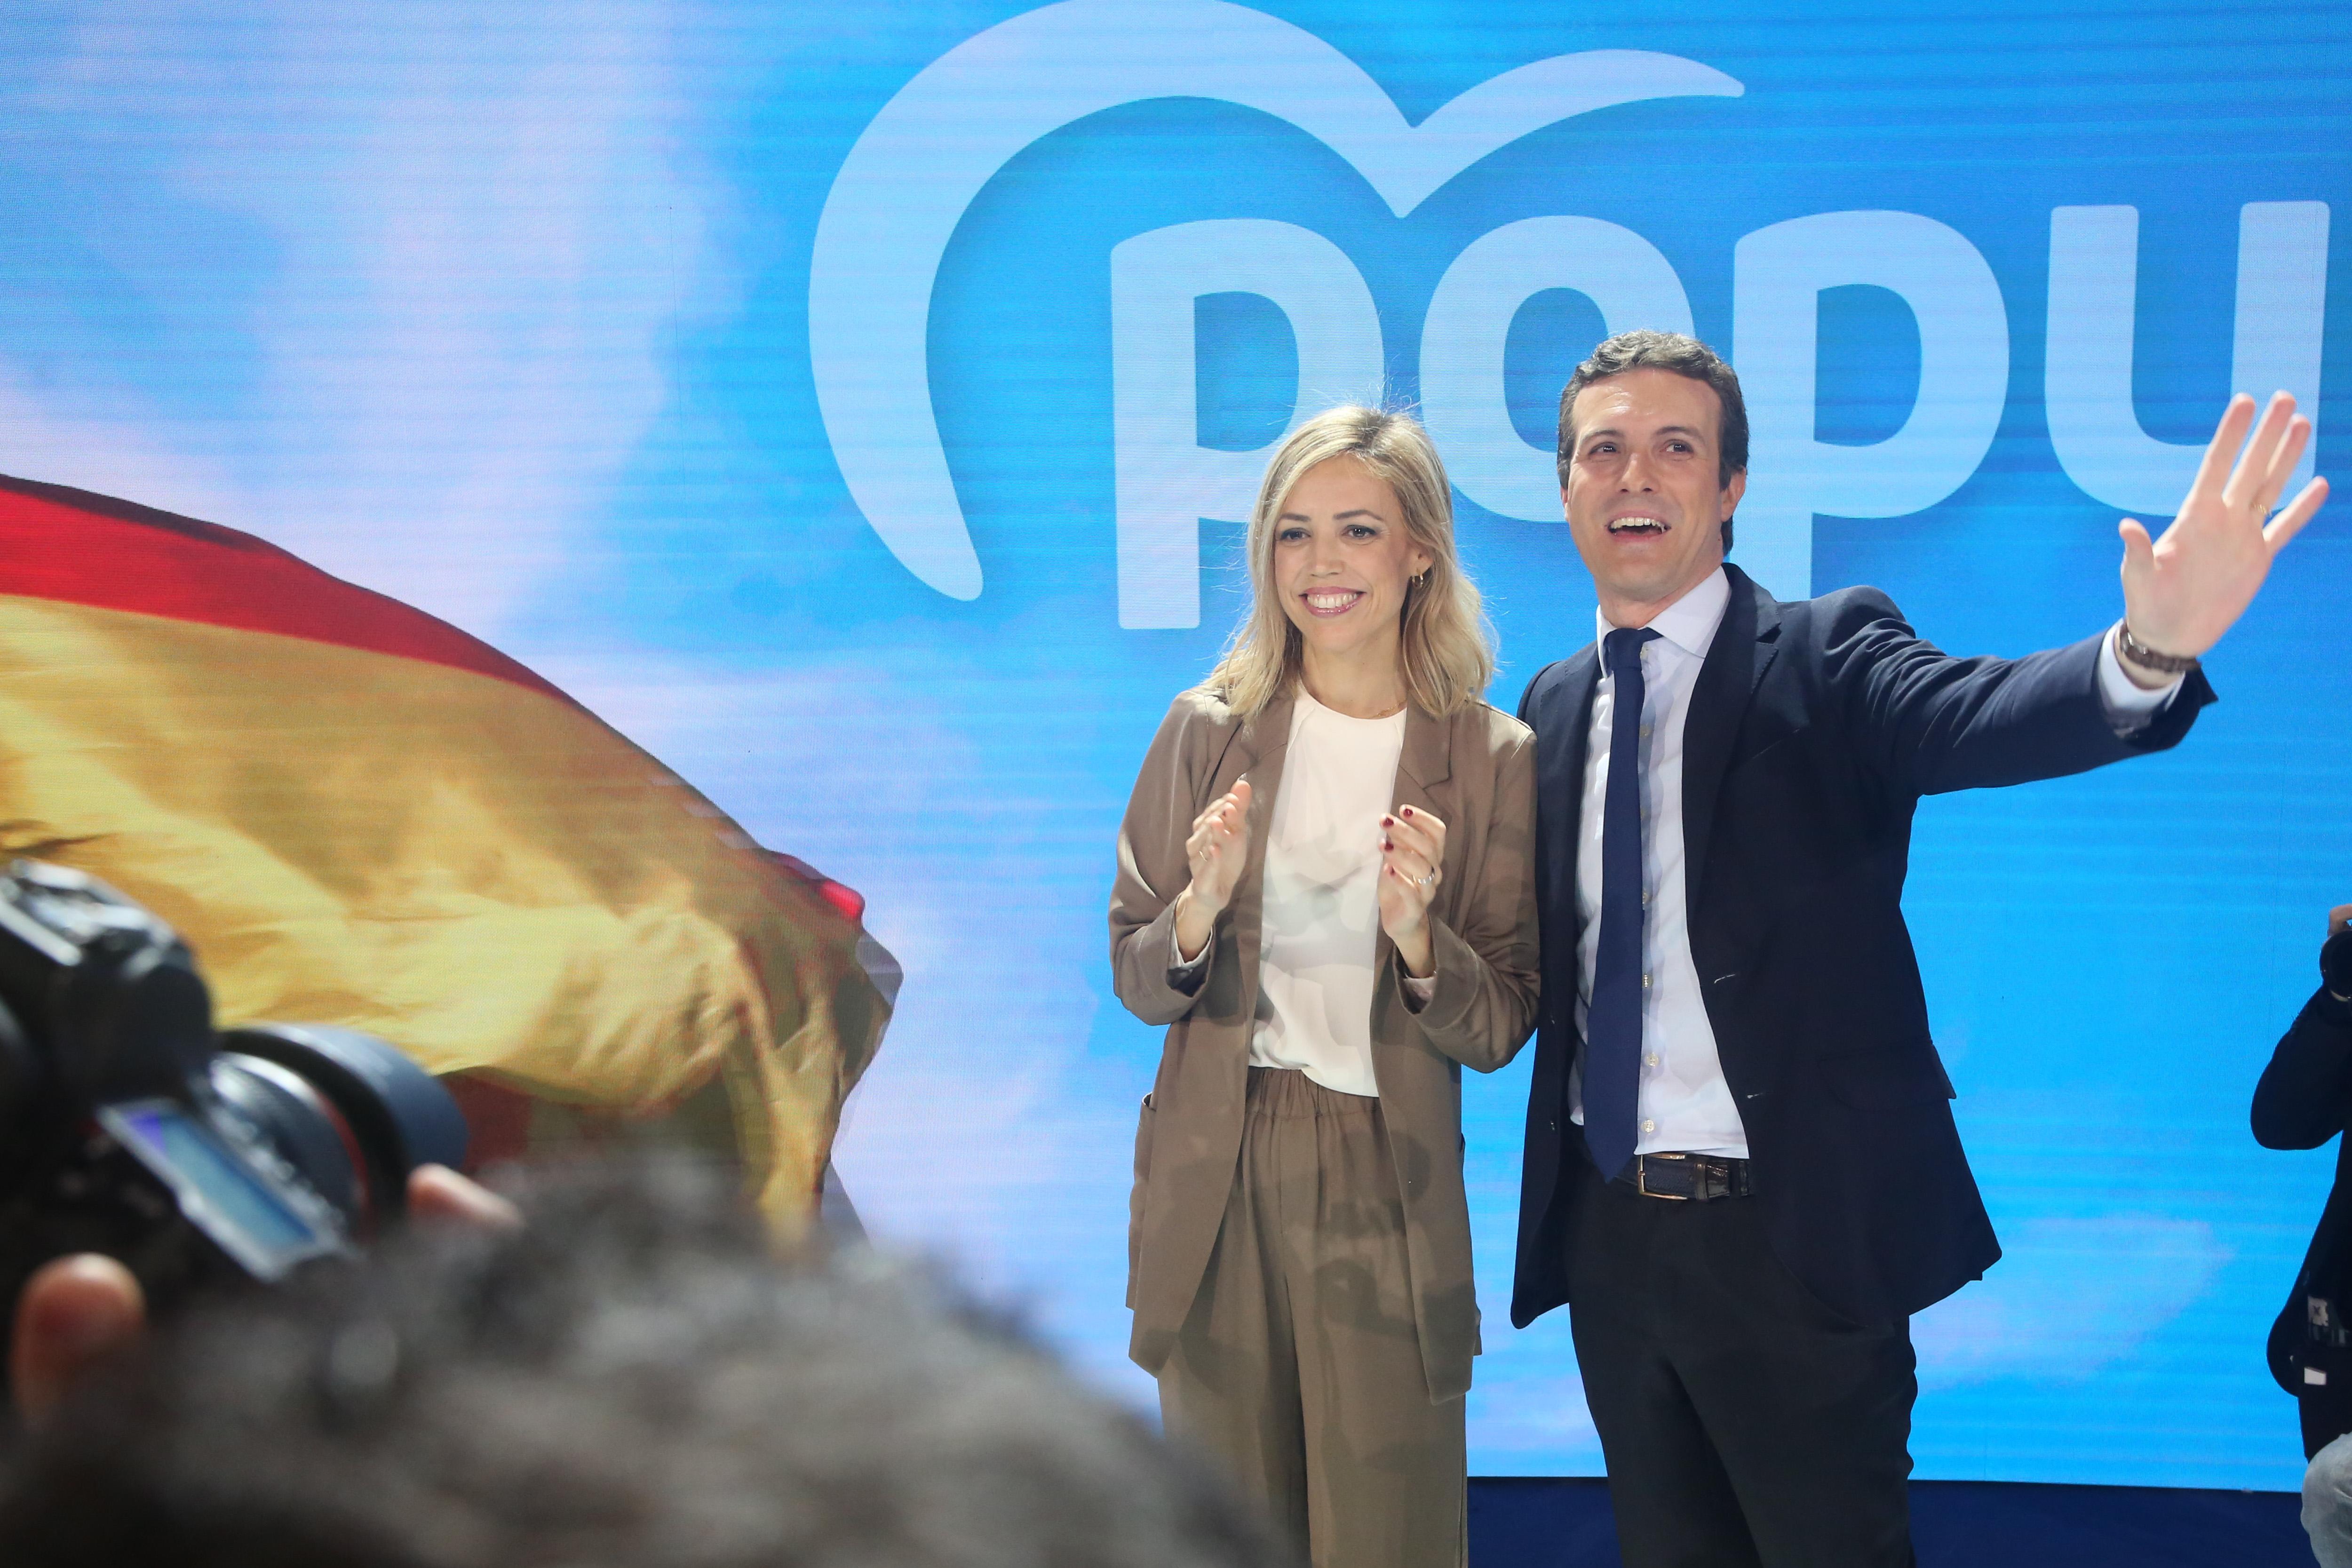 El presidente del PP Pablo Casado; y su esposa la psicopedagoga Isabel Torres Orts saludan durante la tercera jornada de la Convención Nacional del PP España en libertad 